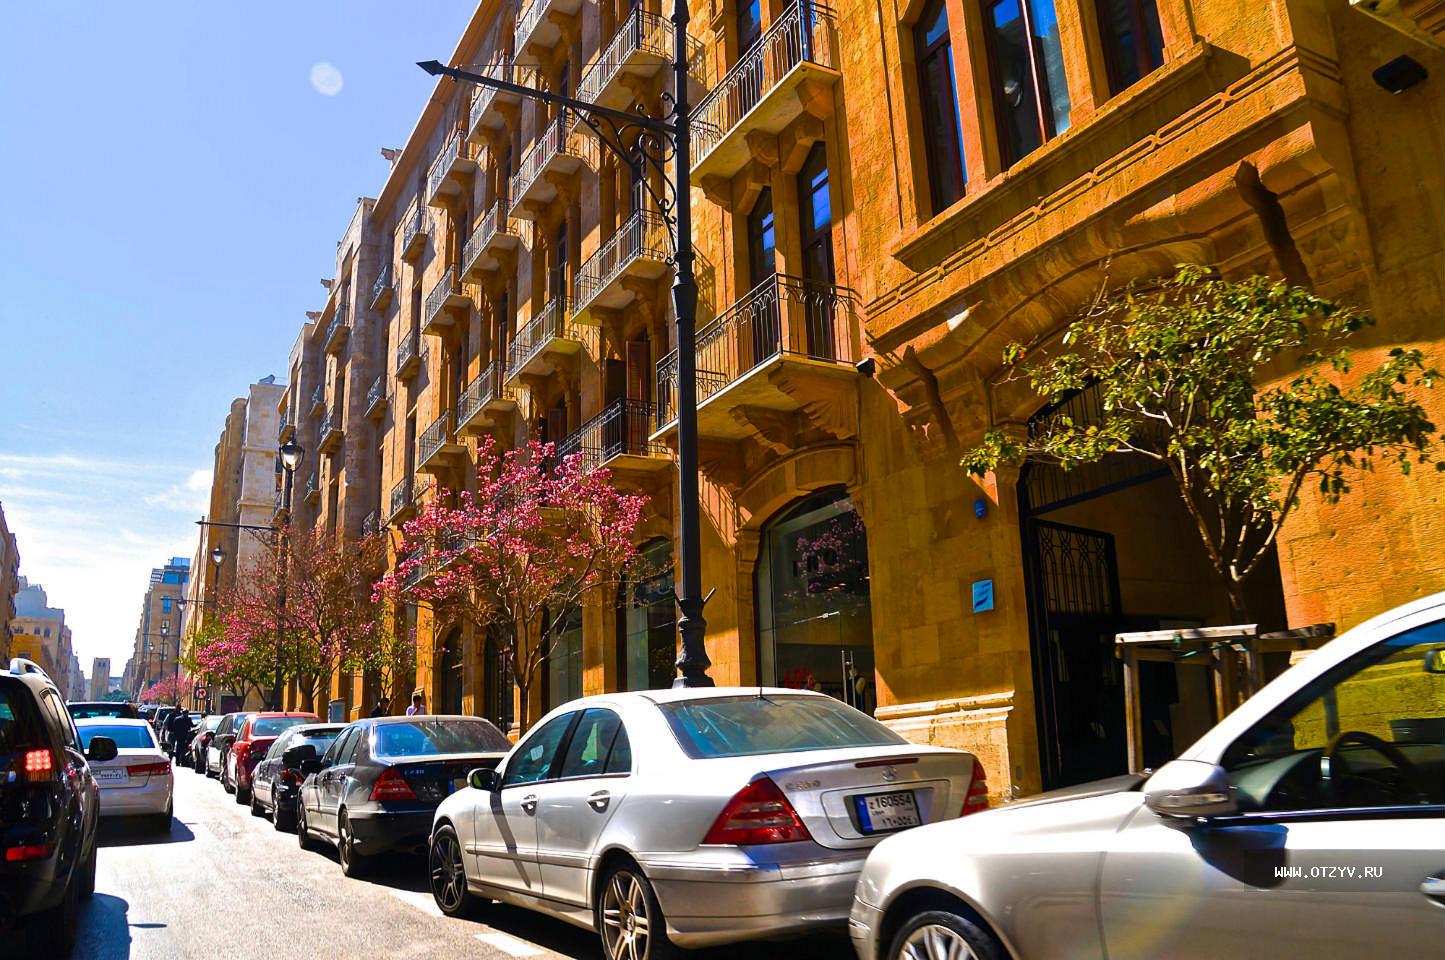 Телефона бейрут. Бейрут старый город. Бейрут Ливан улицы. Бейрут армянский квартал. Бейрут старый город улицы.